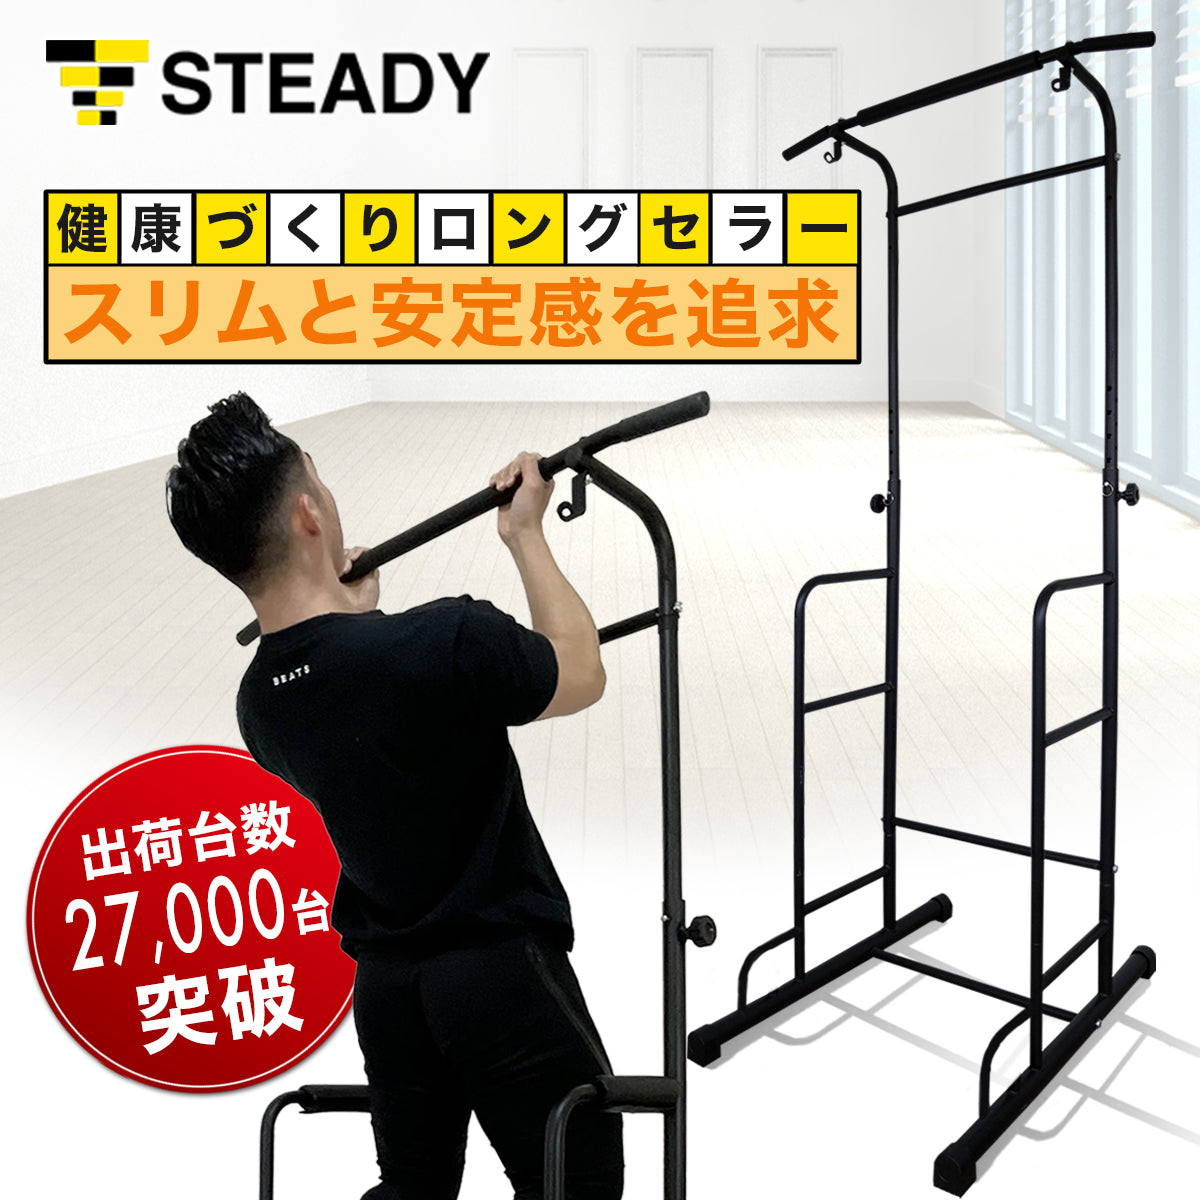 直営店から日本全国 懸垂マシン【STEADY】 | www.artfive.co.jp